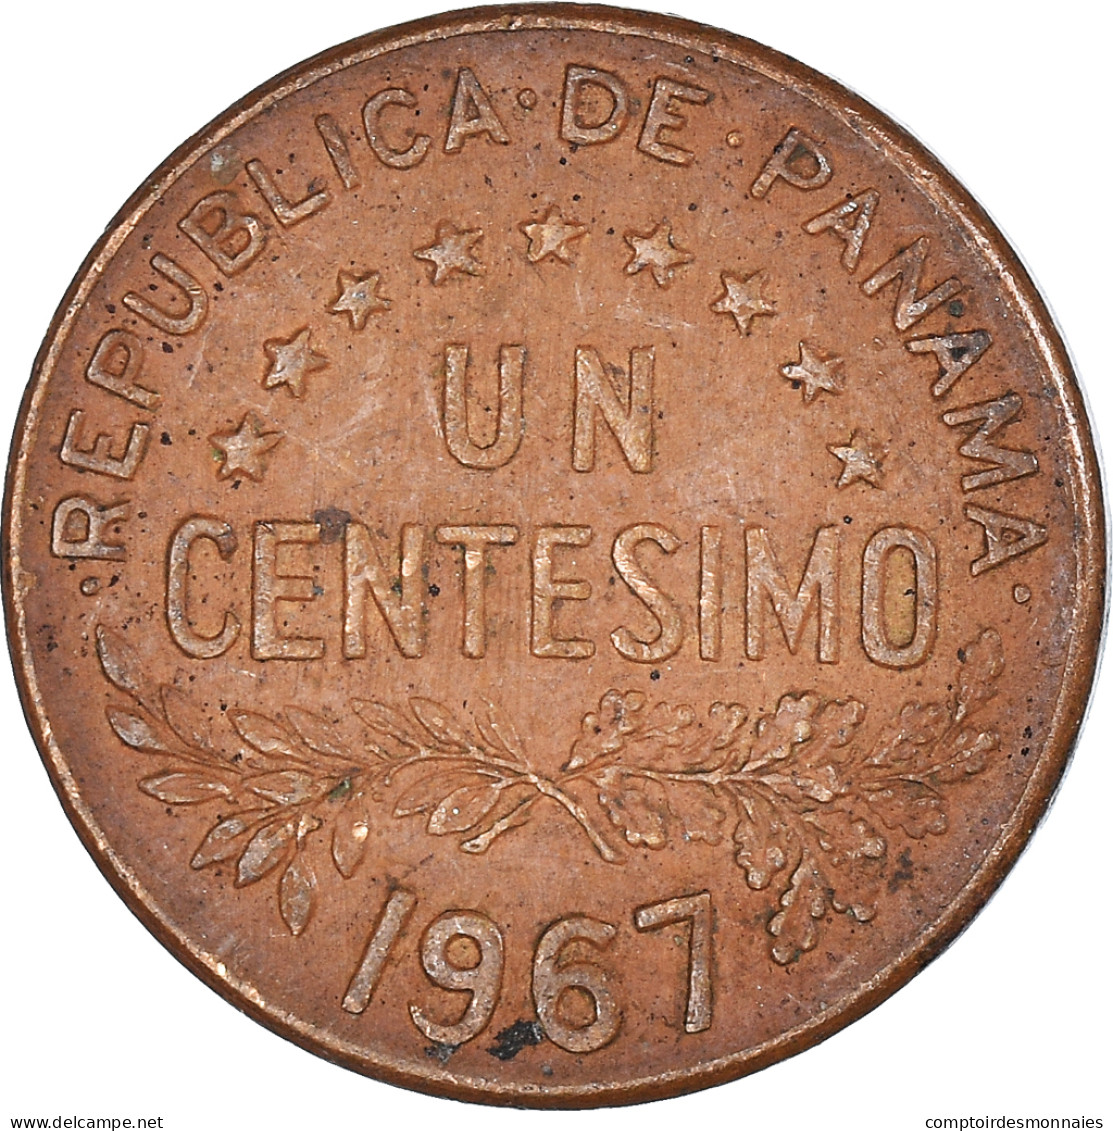 Monnaie, Panama, Centesimo, 1967 - Panama